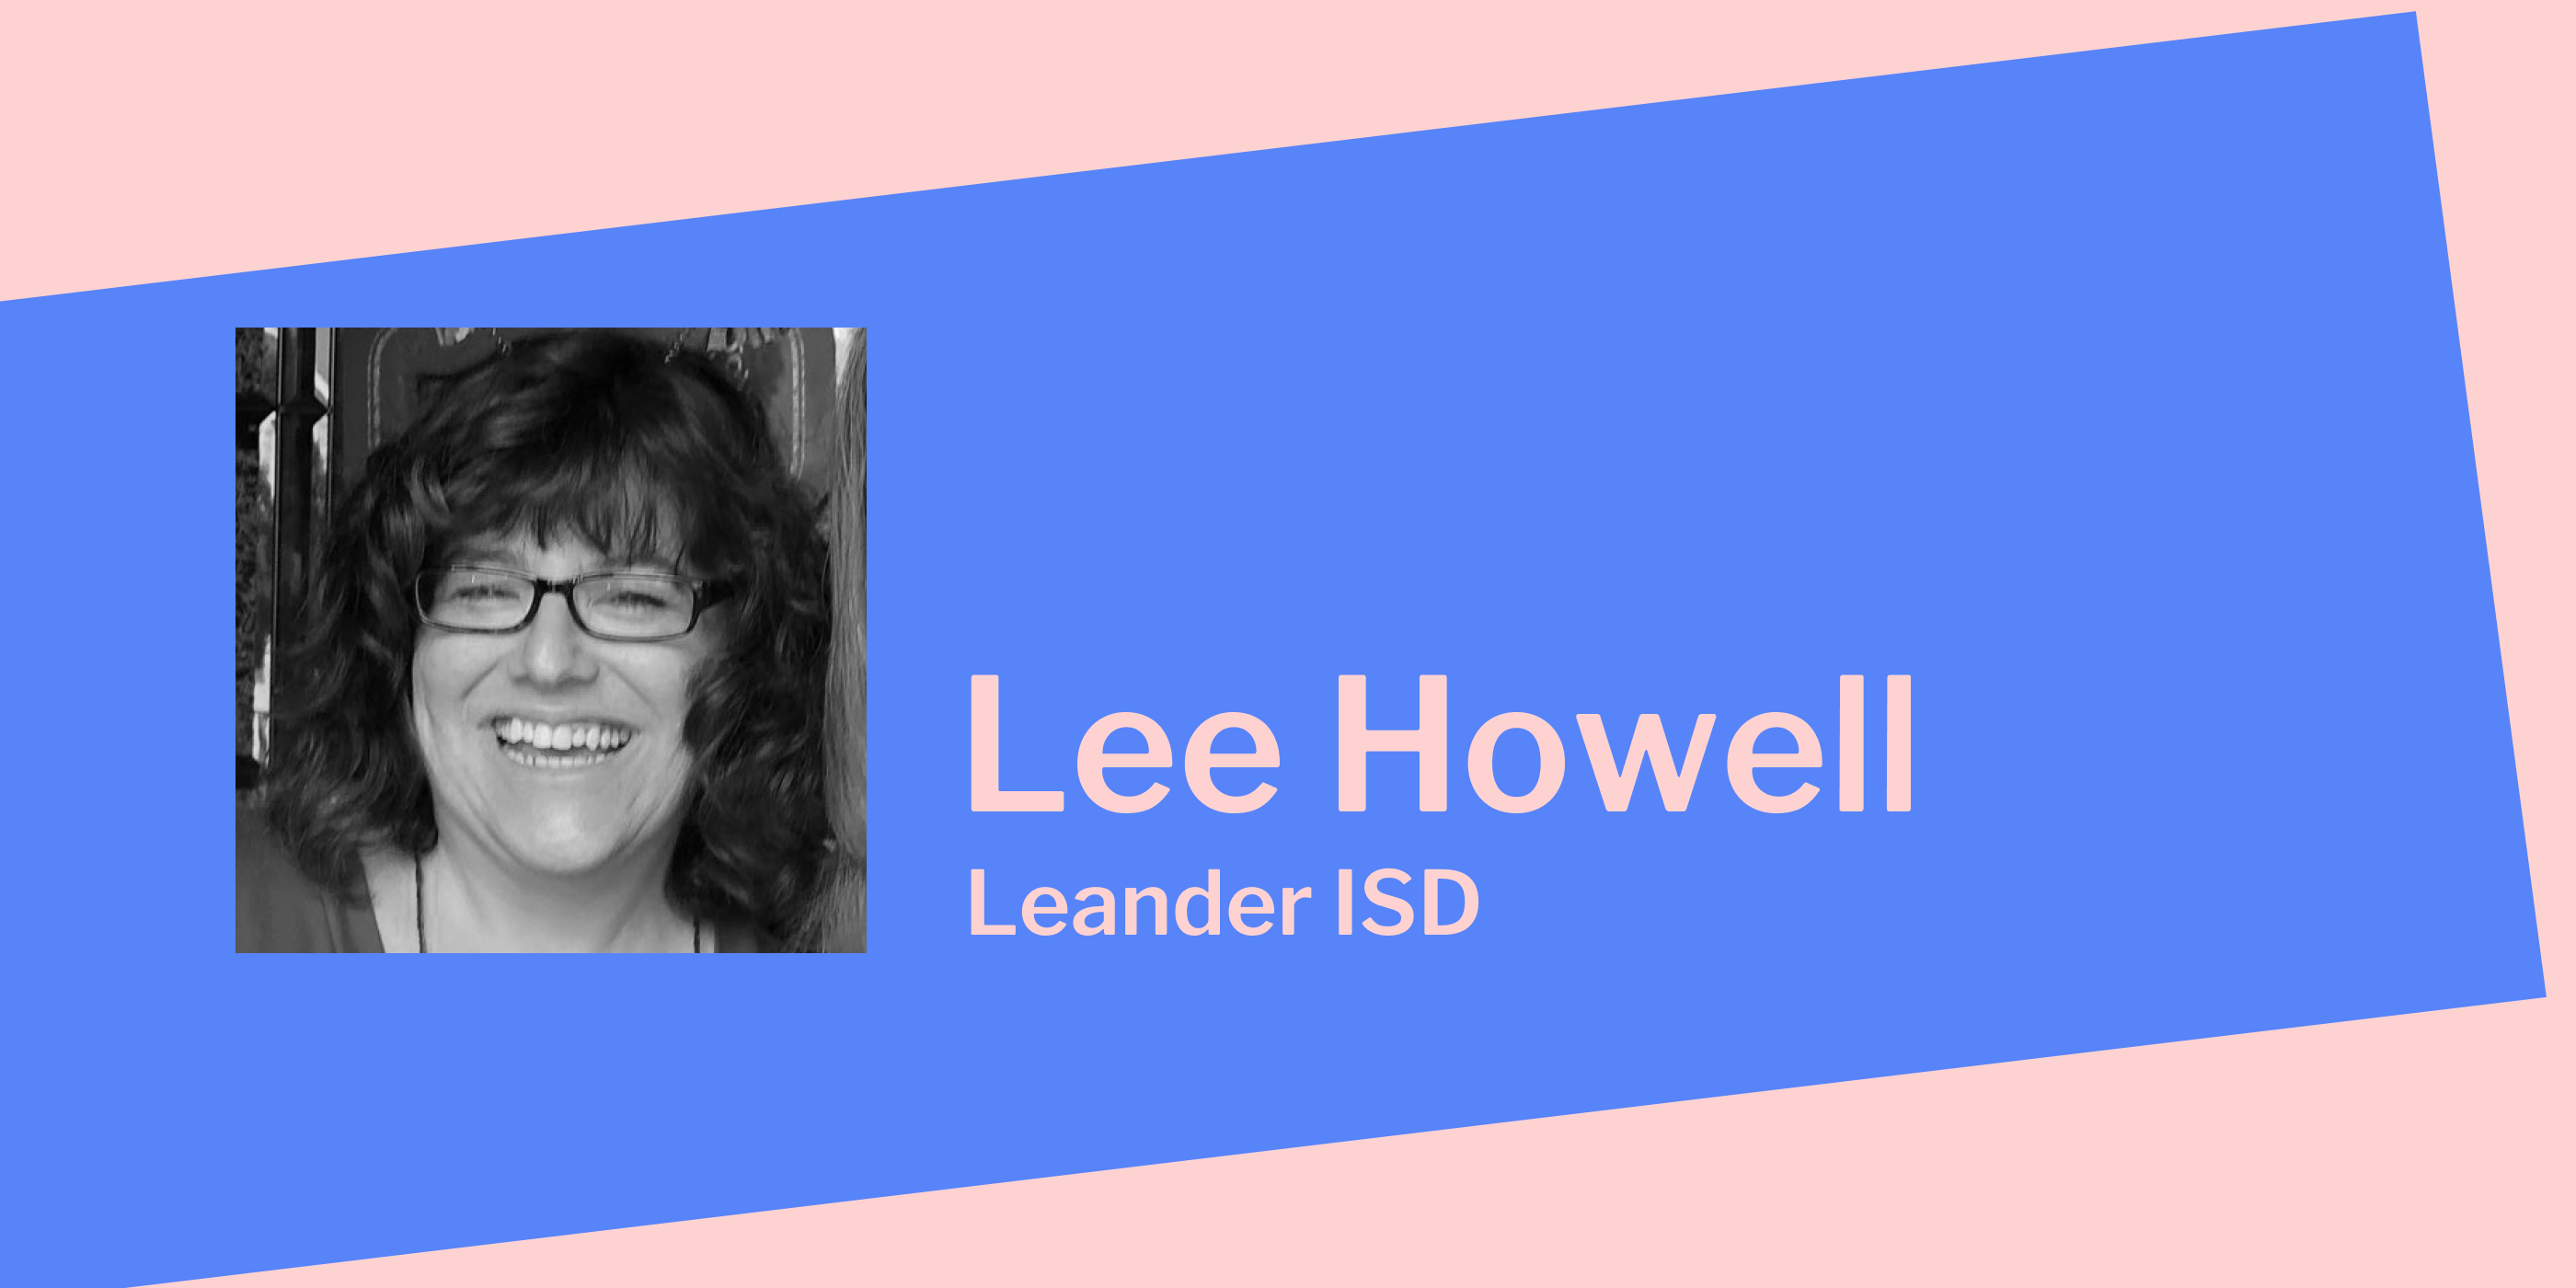 Lee Howell: Leander ISD